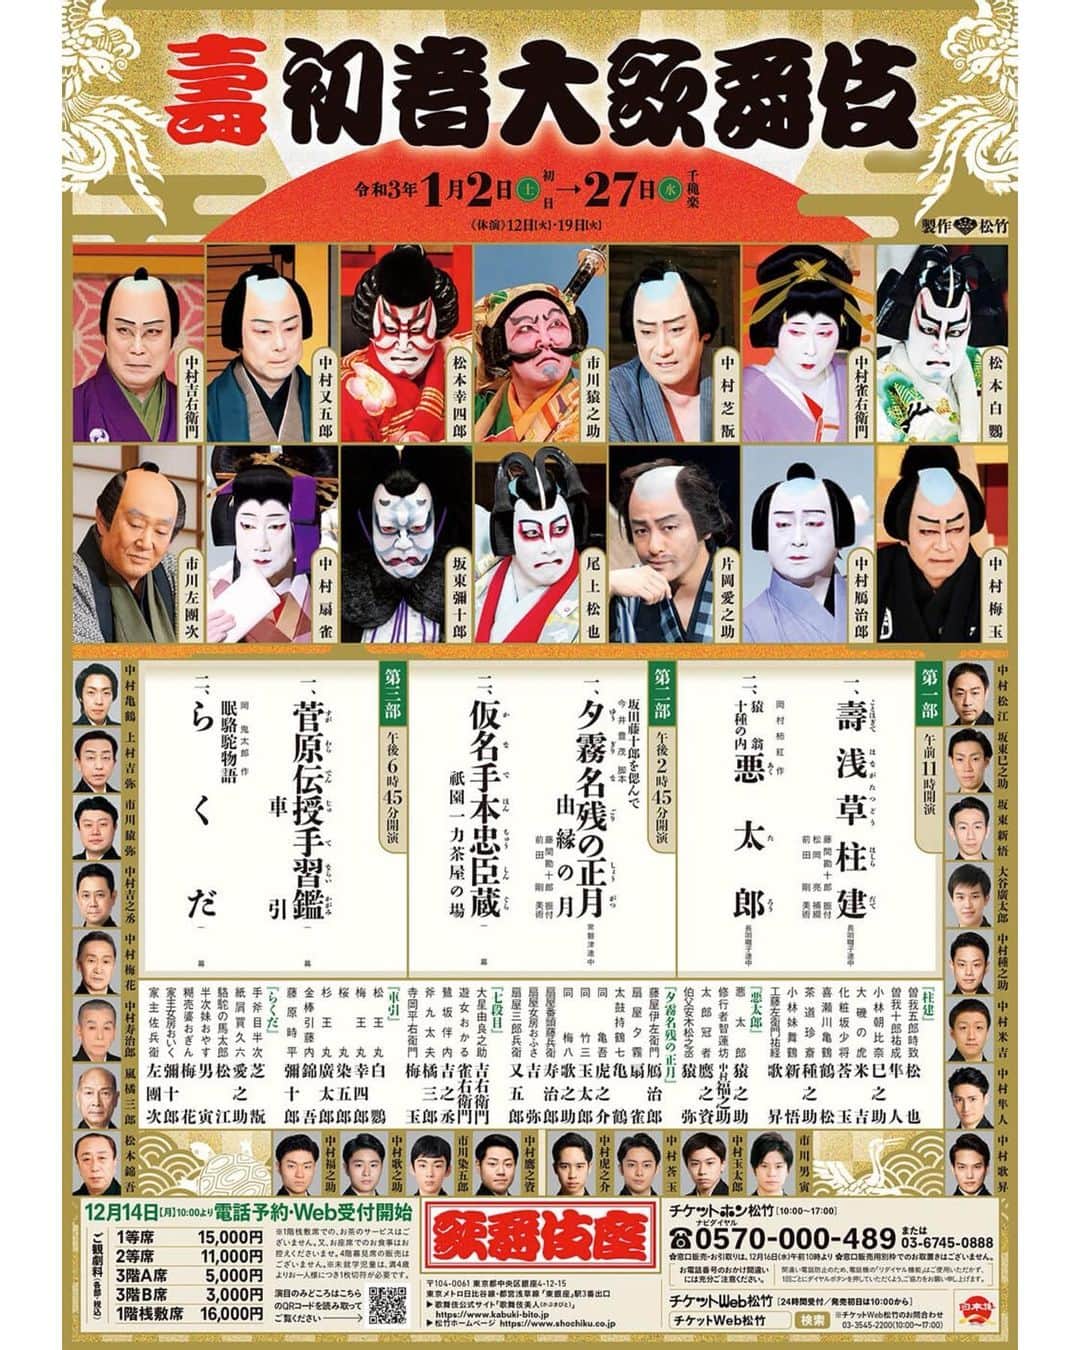 中村莟玉のインスタグラム：「・ 2021年の1月は歌舞伎座に出演いたします。 「柱建」(はしらだて)は、莟玉の名前の由来でもある、養祖父・六世中村歌右衛門の自主公演「莟会」(つぼみかい)でも上演された演目です。  新春浅草歌舞伎は来年は公演できませんが、こうしてまた、先輩方と共に舞台に立たせていただけること、とても嬉しく思っております。 化粧坂少将、新春浅草歌舞伎に初めて出させていただいた時に勤めたお役です。あれから8年。あの時のことを思い出しながら懸命に勤めます。 今からお稽古が楽しみです。  歌舞伎座の公演形態も1月からは3部制、各部2演目ずつの上演となります。 大きな一歩だと思います。  引き続き、安心してご覧いただけるように、皆さんと力を合わせて頑張ります。 応援のほど、よろしくお願い申し上げます！  #2021年 #歌舞伎座 #寿初春大歌舞伎  #第1部 #寿浅草柱建 #ことほぎて #はながたつどう #はしらだて  #化粧坂少将 #中村莟玉」